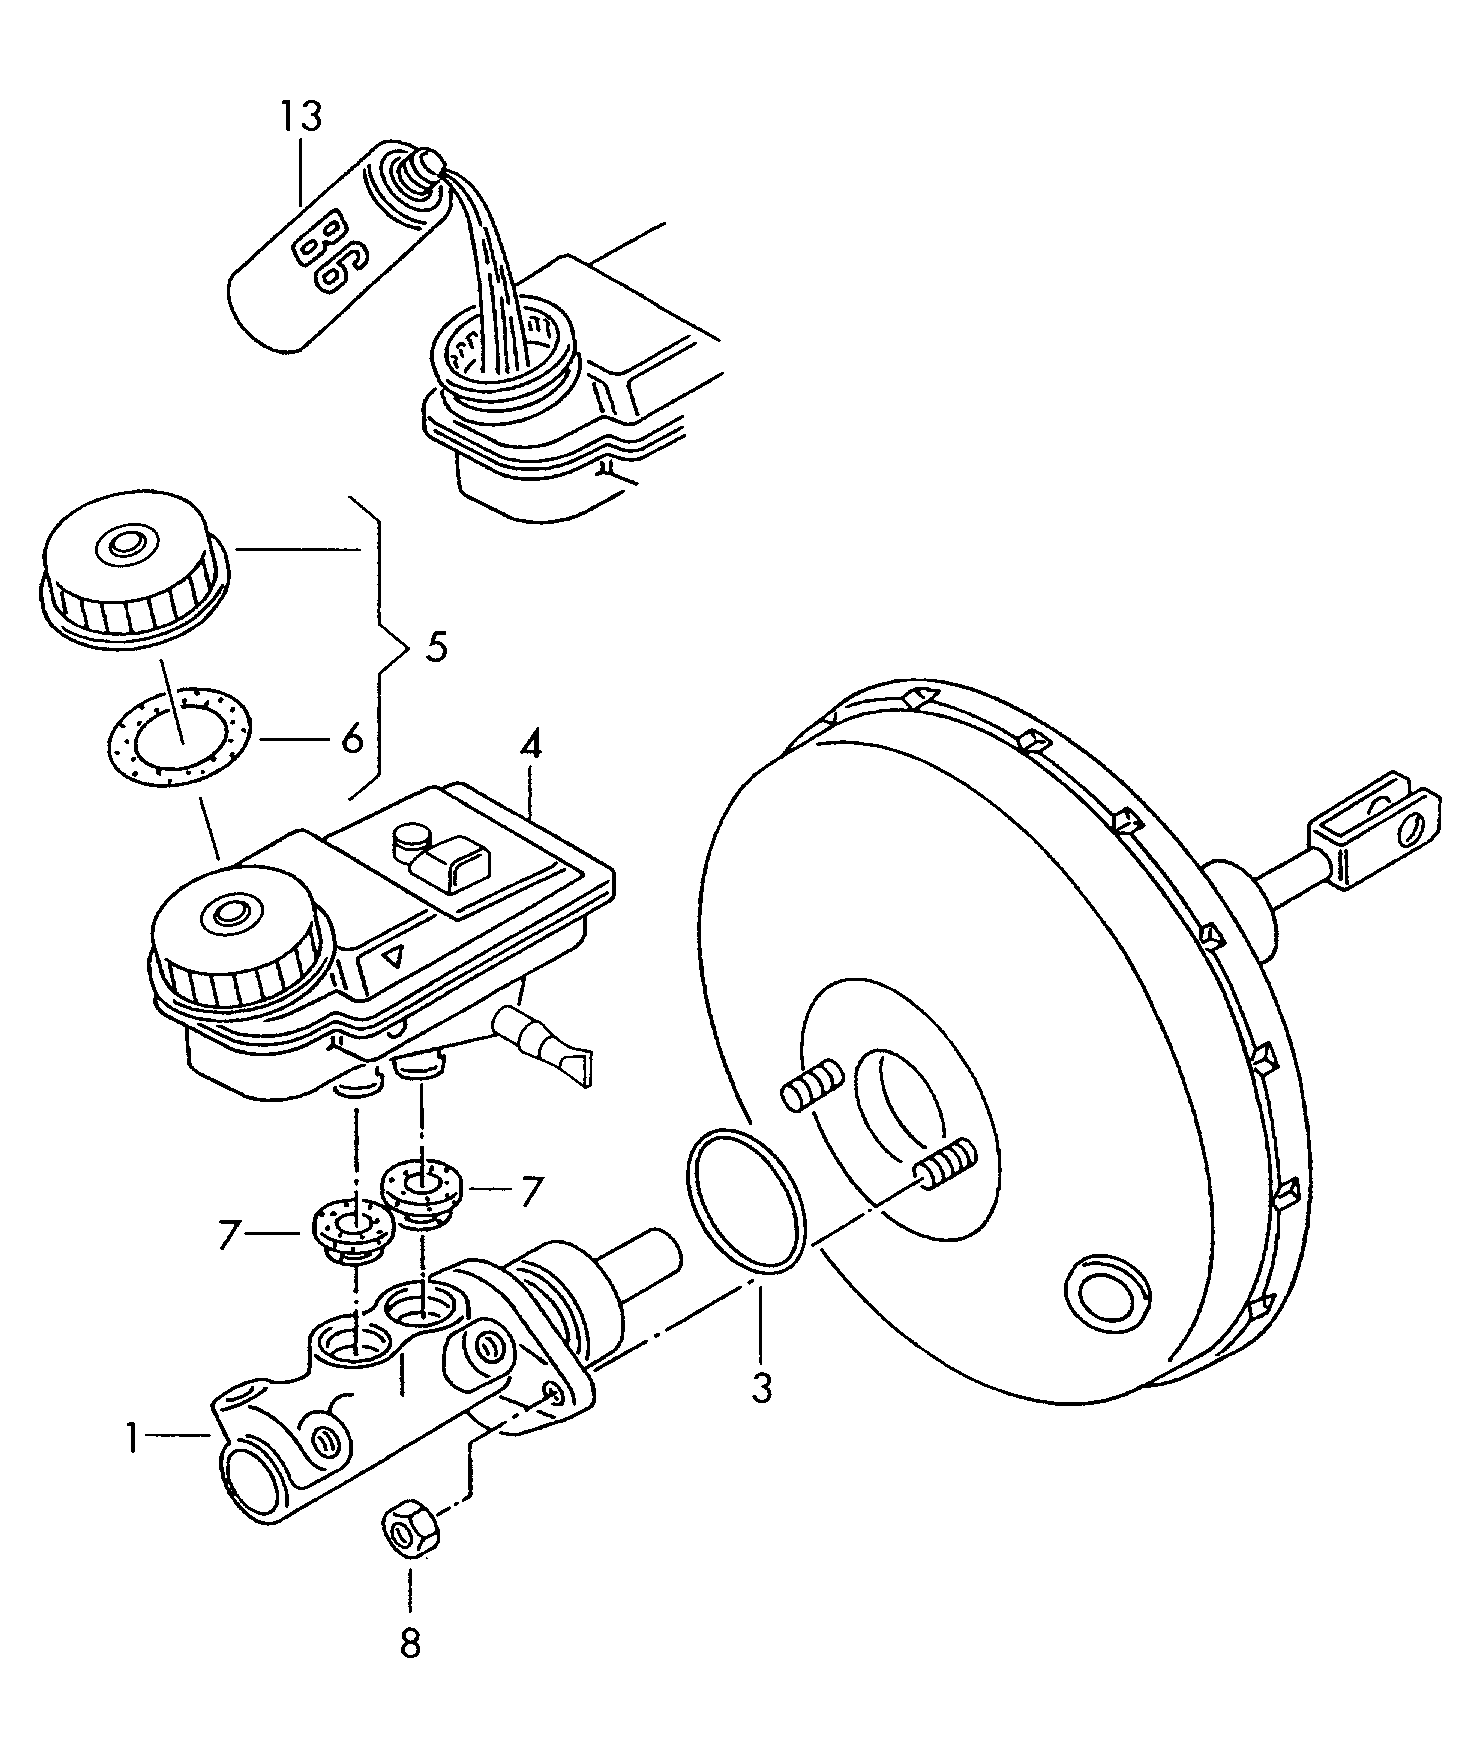 cilindro principale freniserbatoio rabboccoliquido freni            ATE - Transporter - tr